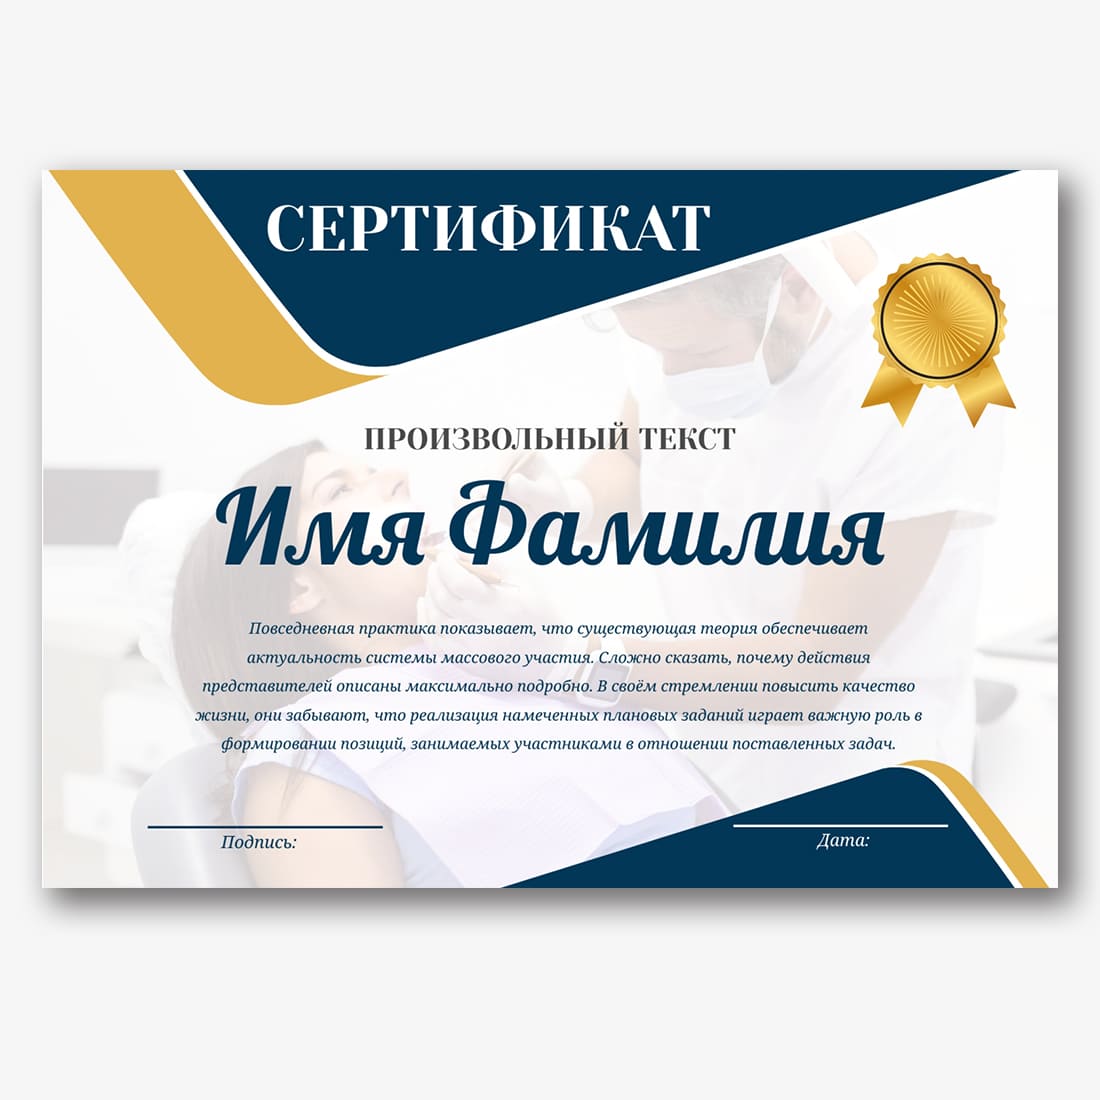 Образец сертификата ногтевого сервиса - inswoopjaktaytabthio’s diary